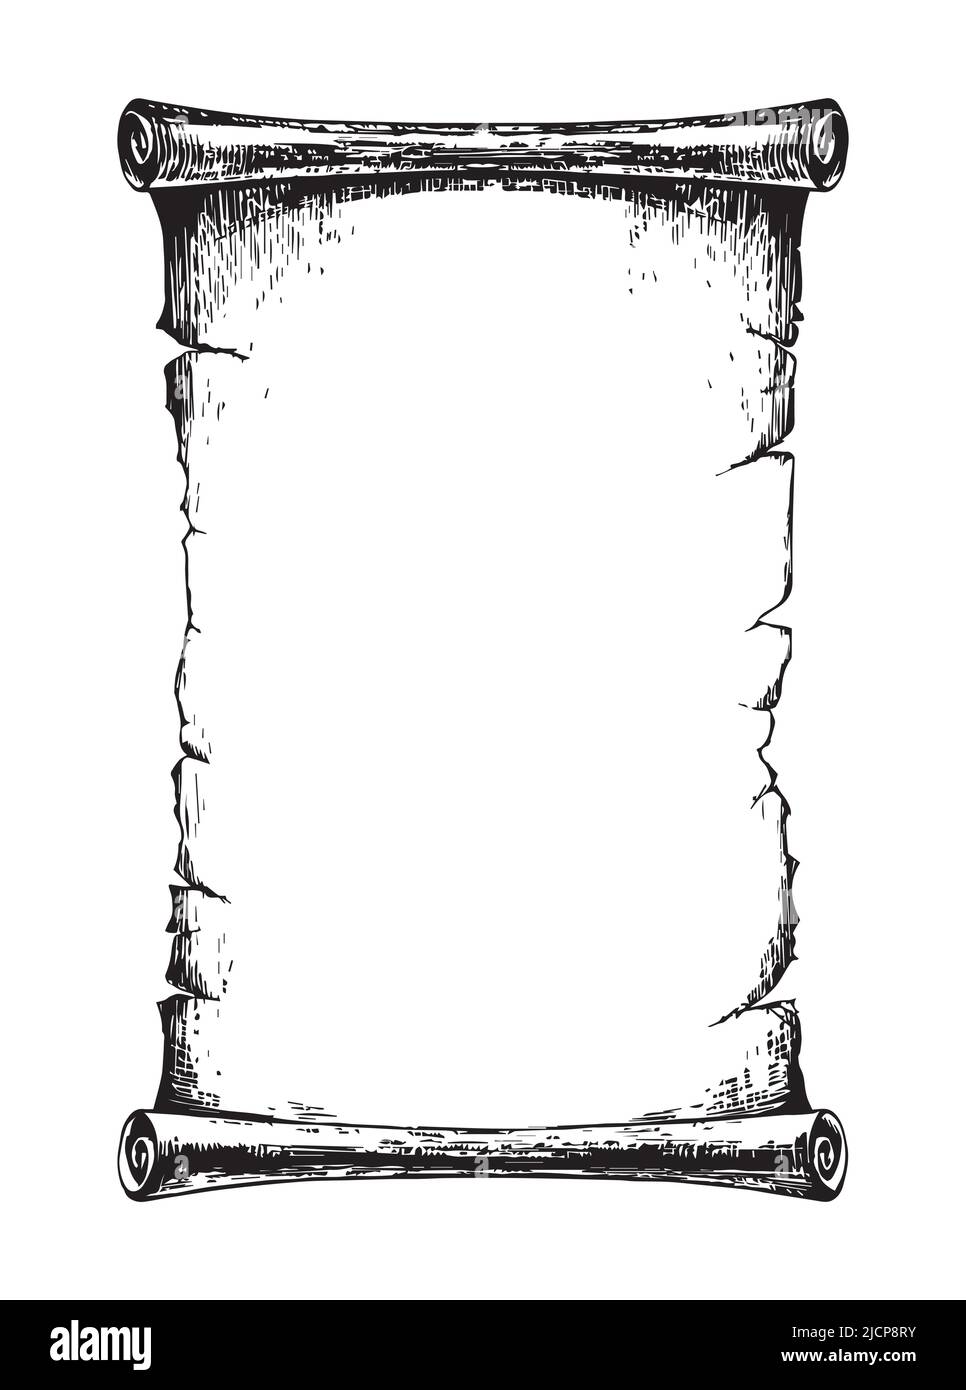 illustration vectorielle isolée sur fond blanc. un rouleau de papier ou de  papyrus, enroulé sur un rouleau. un message ou une lettre dans le style du  monde antique. élément de conception. 15836271